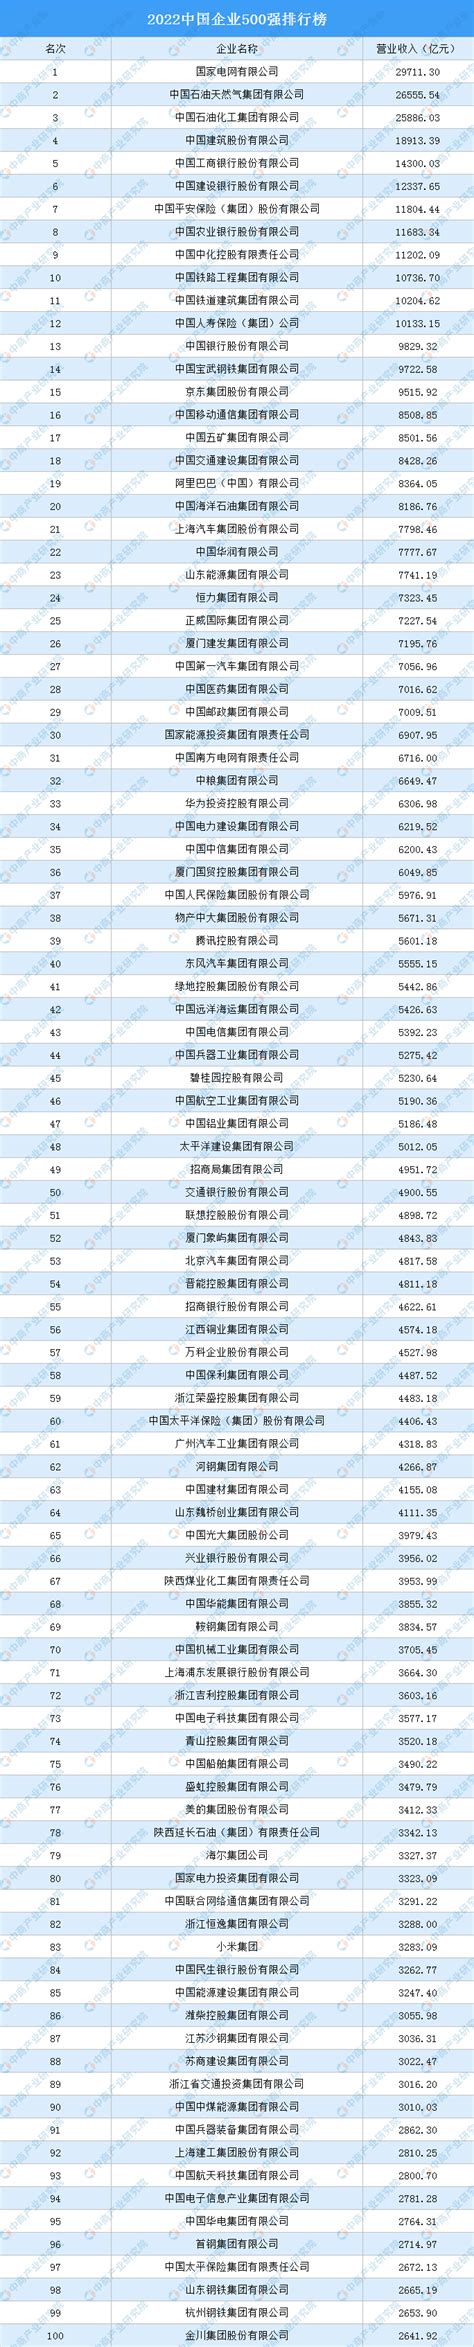 2019基金公司排行_2019基金公司前十排名榜单 基金公司排名列表(3)_排行榜